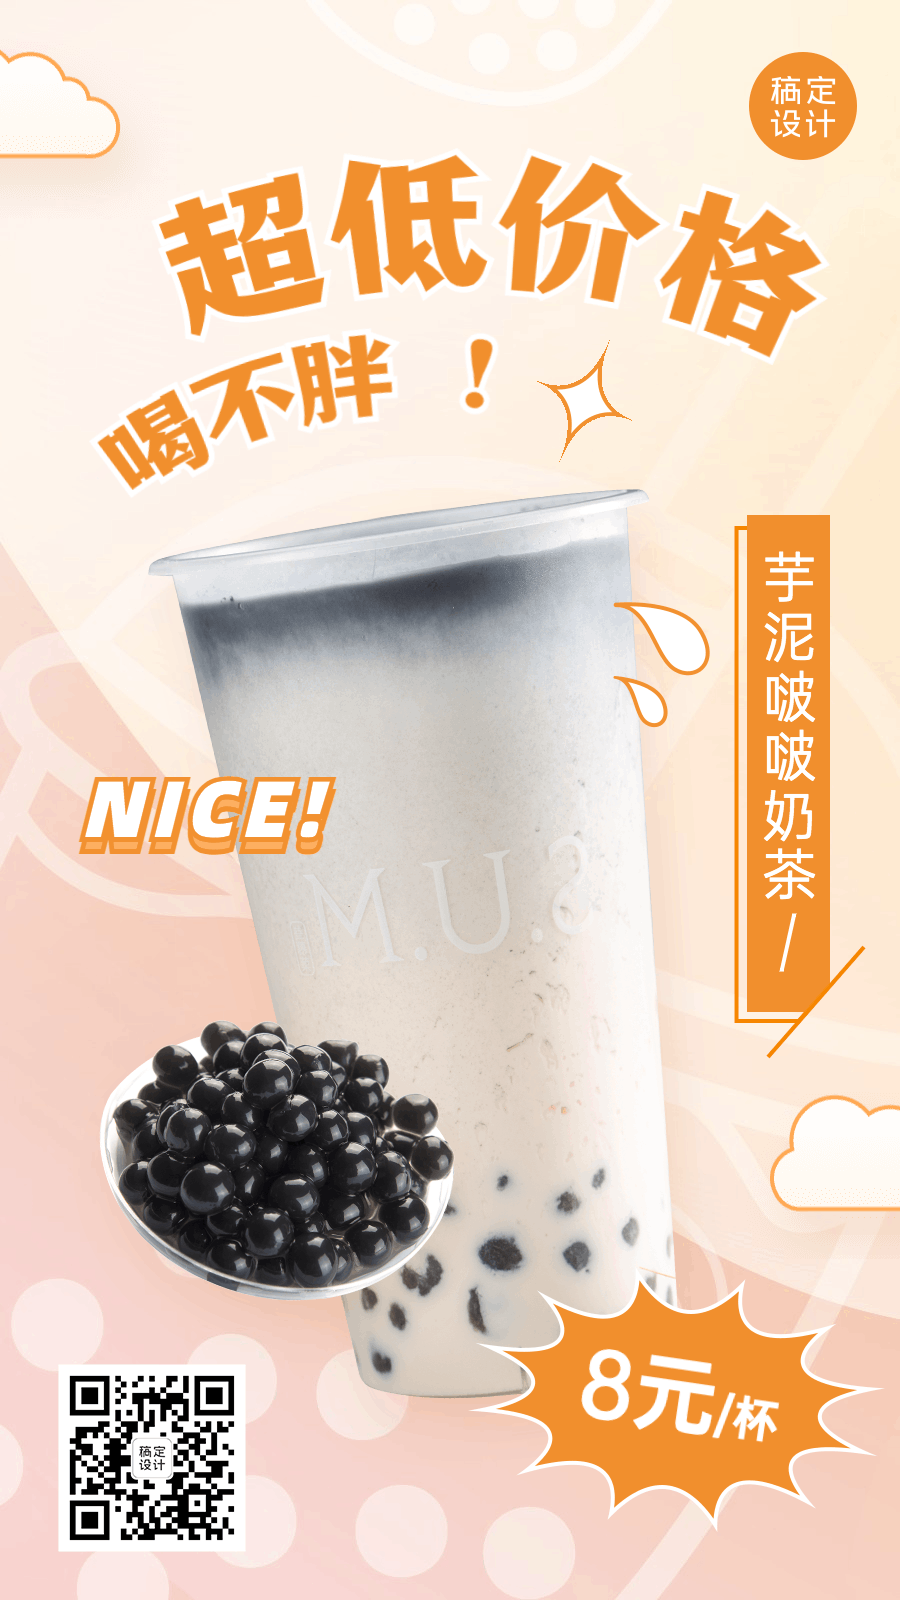 奶茶产品活动营销GIF动态手机海报